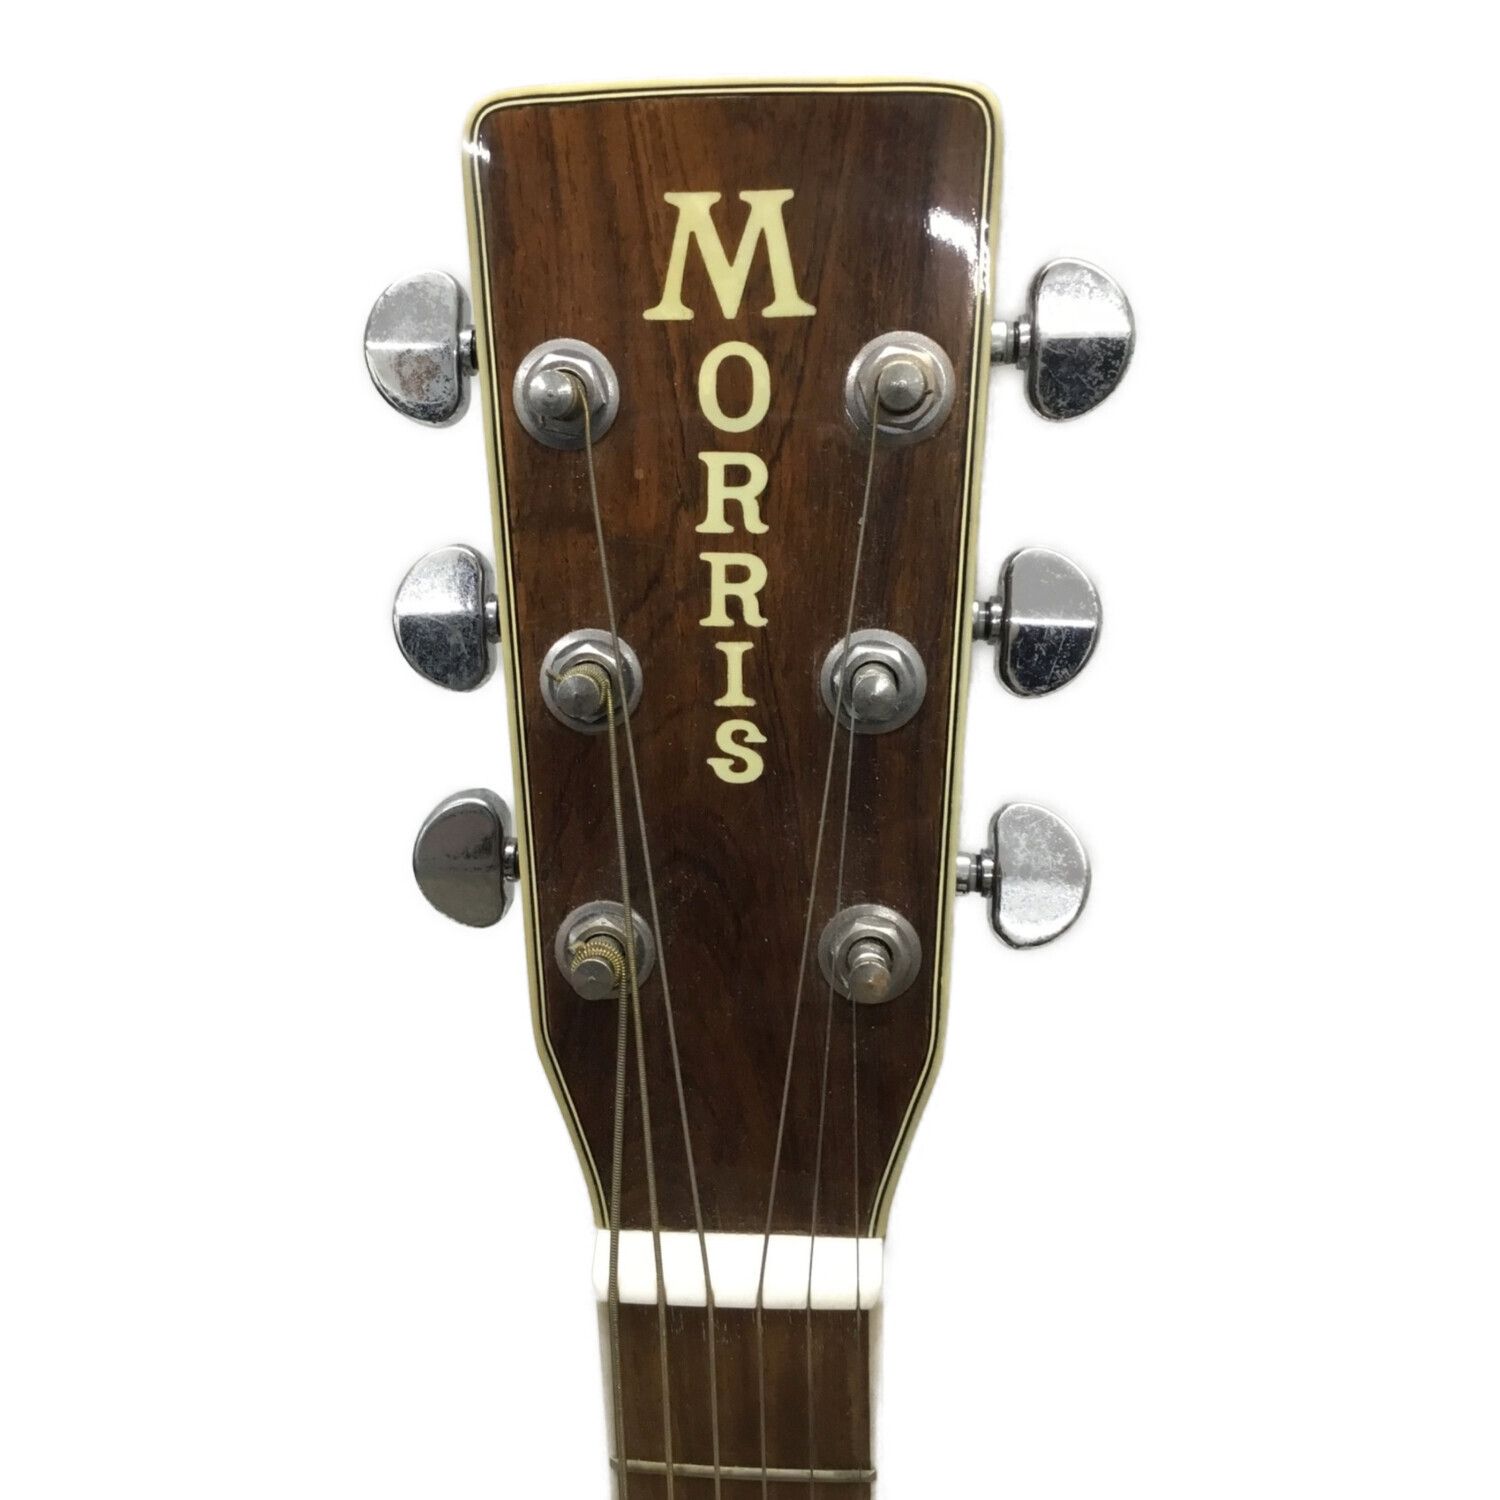 MORRIS (モーリス) アコースティックギター W-40 順反り有 80628